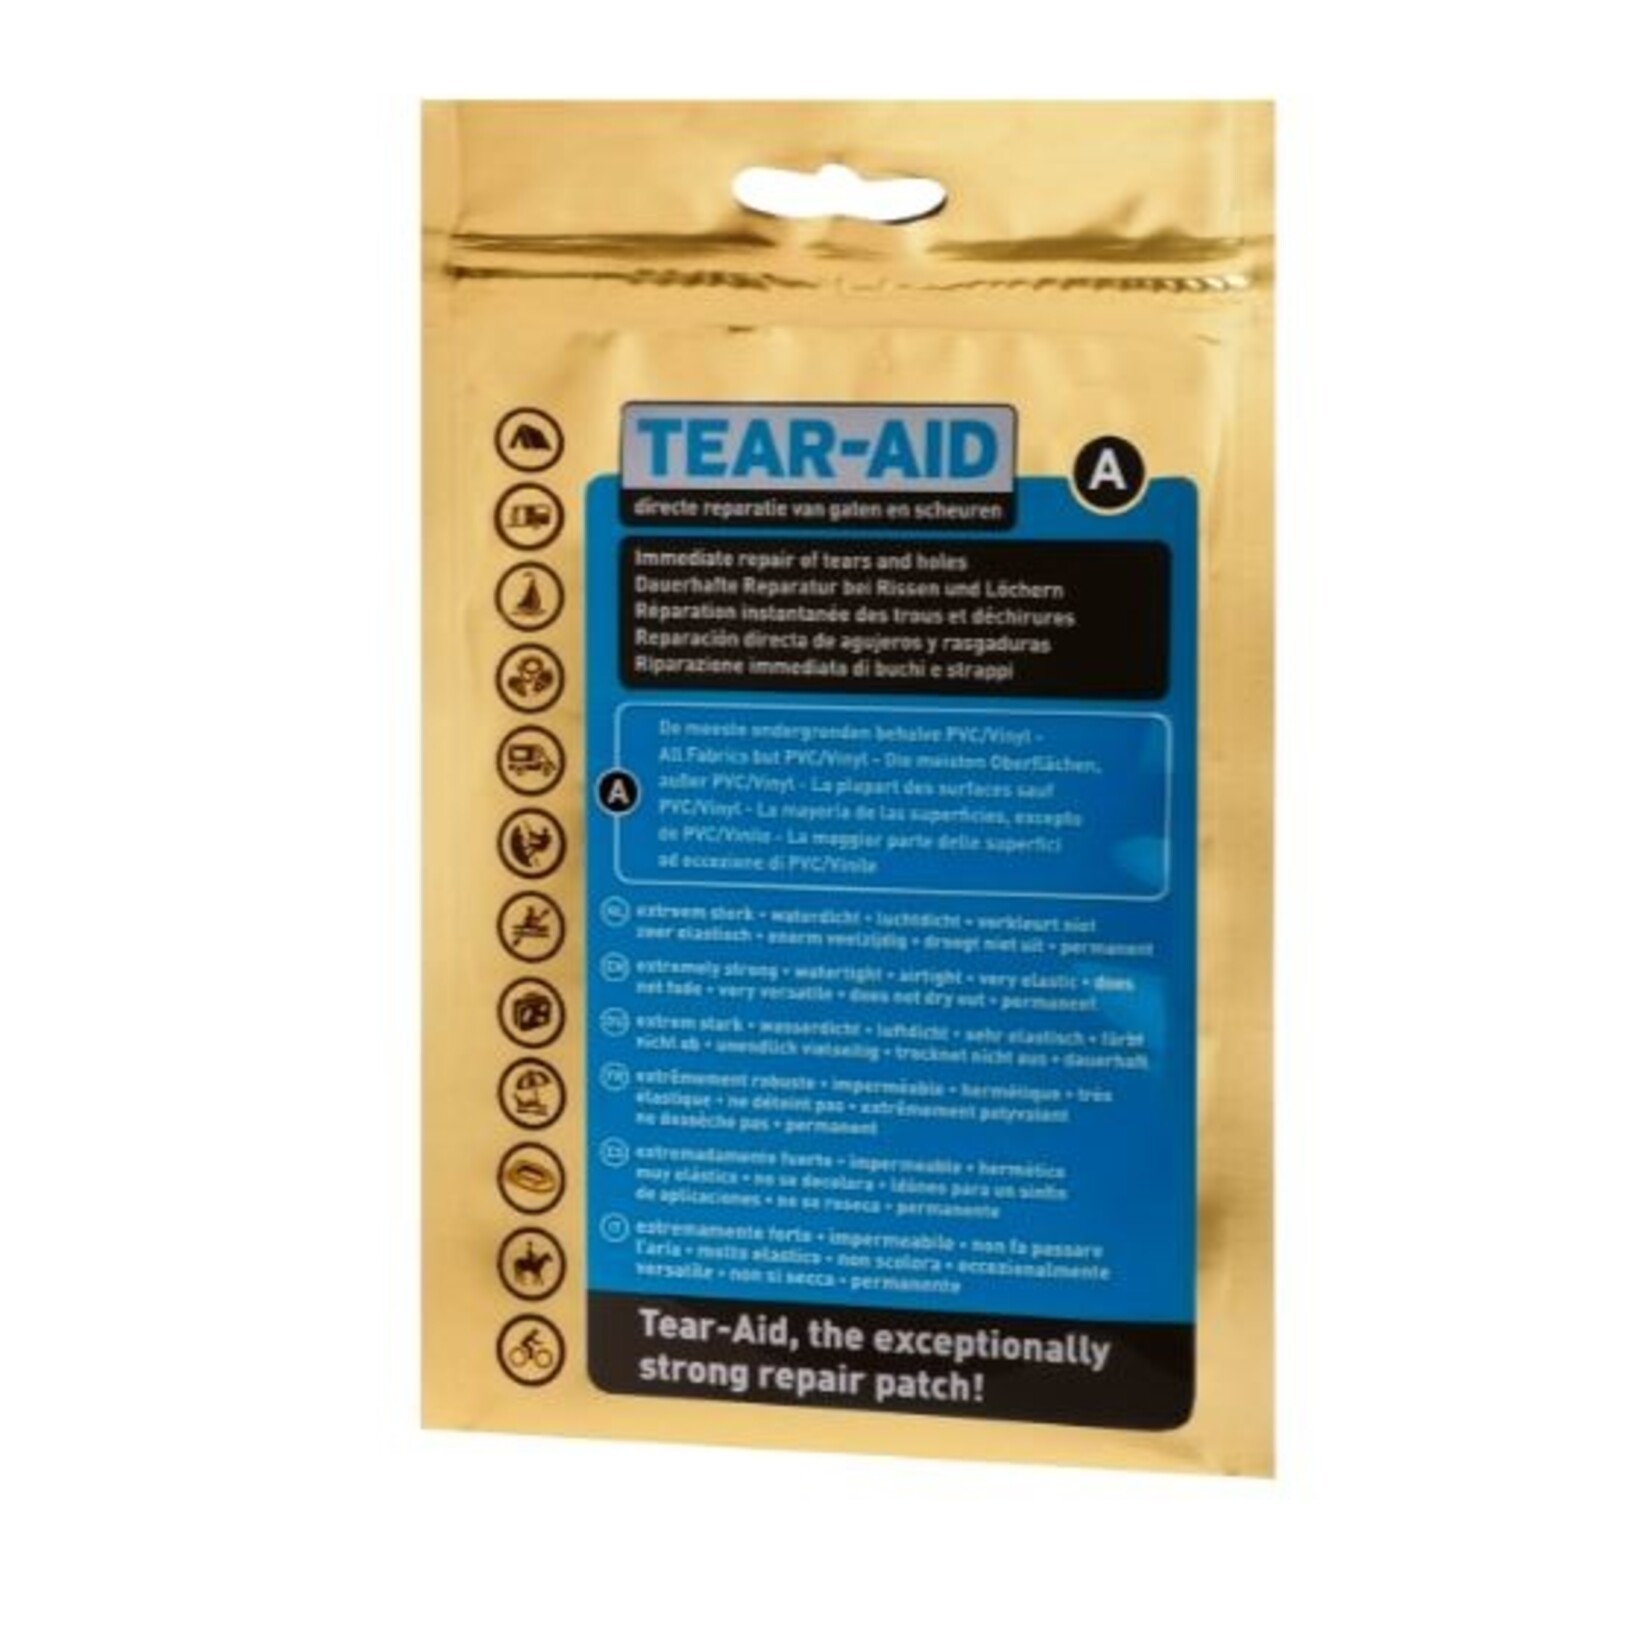 Tear-Aid Tear-Aid repair kit Type A Gold